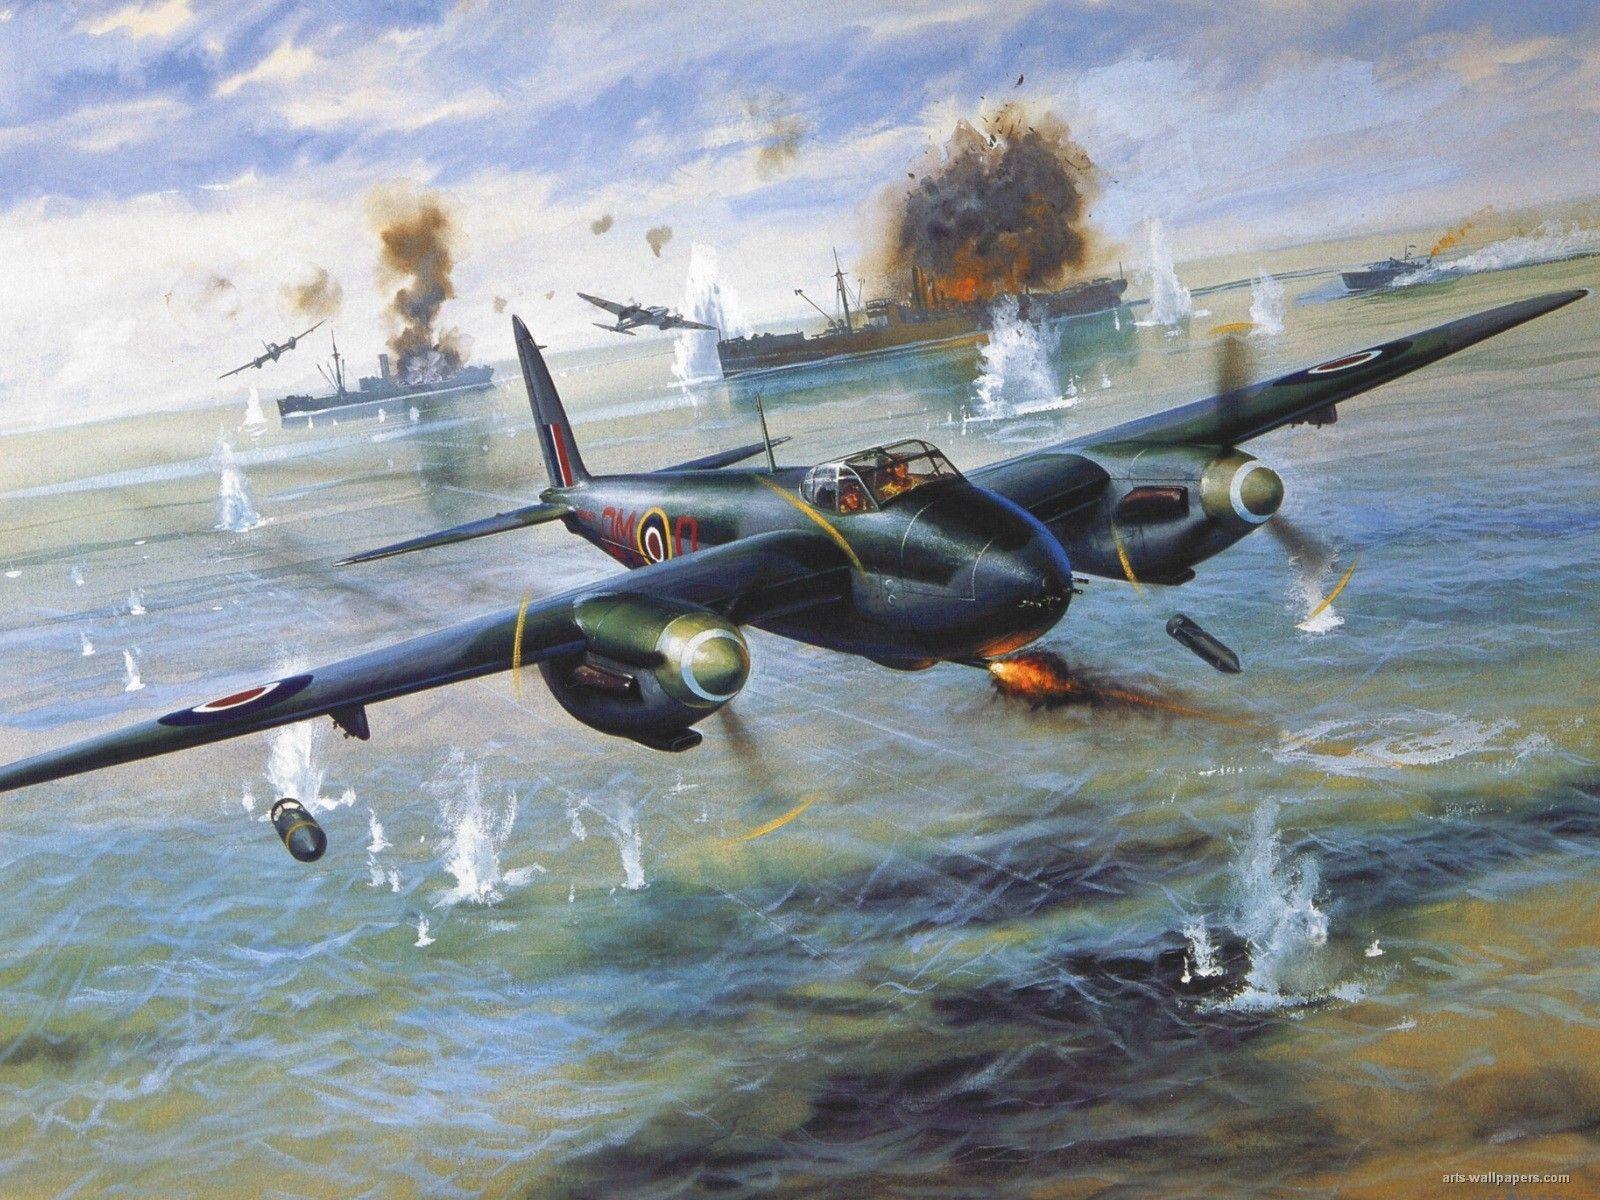 Best guns wallpaper: Image ww2 planes world war 2 planes